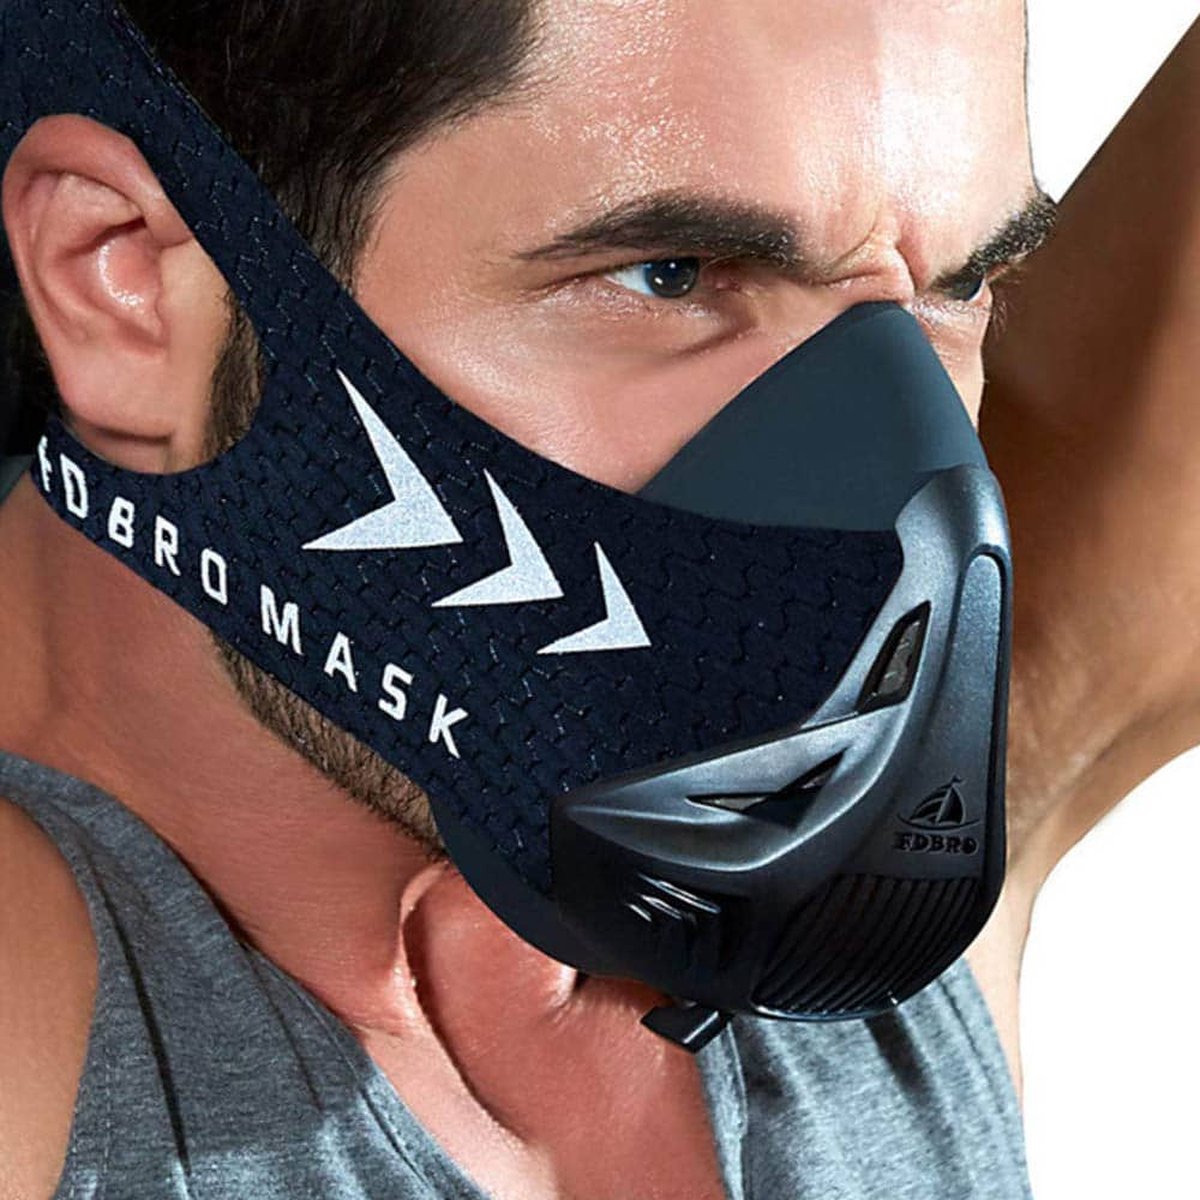 Masque à oxygène Vola Profile 2 - Textile Homme - Sports Hiver